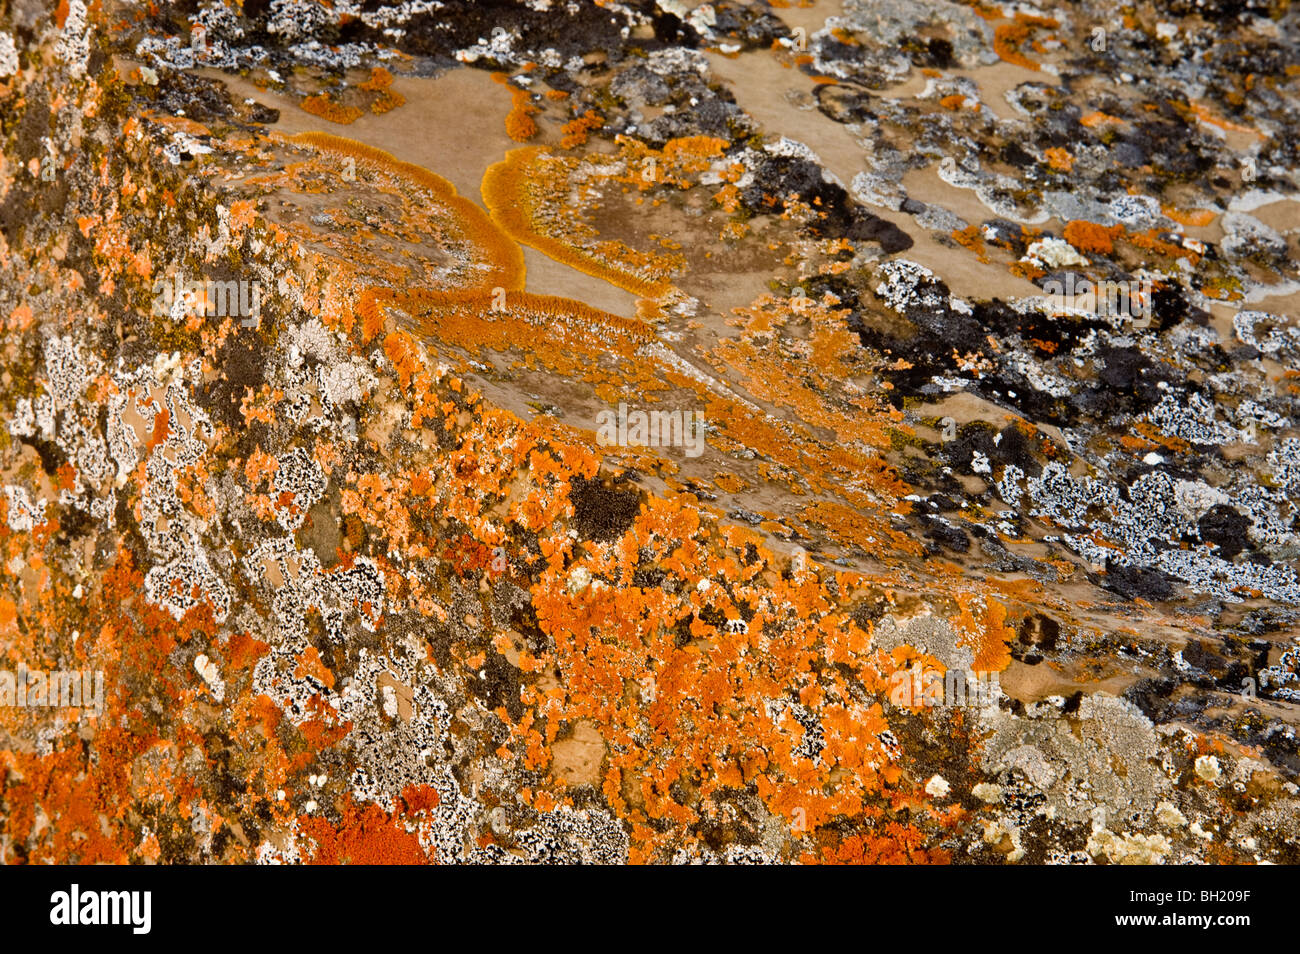 Orangefarbenen Flechten Kolonie auf Sandstein Konkretion Boulder Gesicht, in der Nähe von sieben Personen, Alberta, Kanada Stockfoto